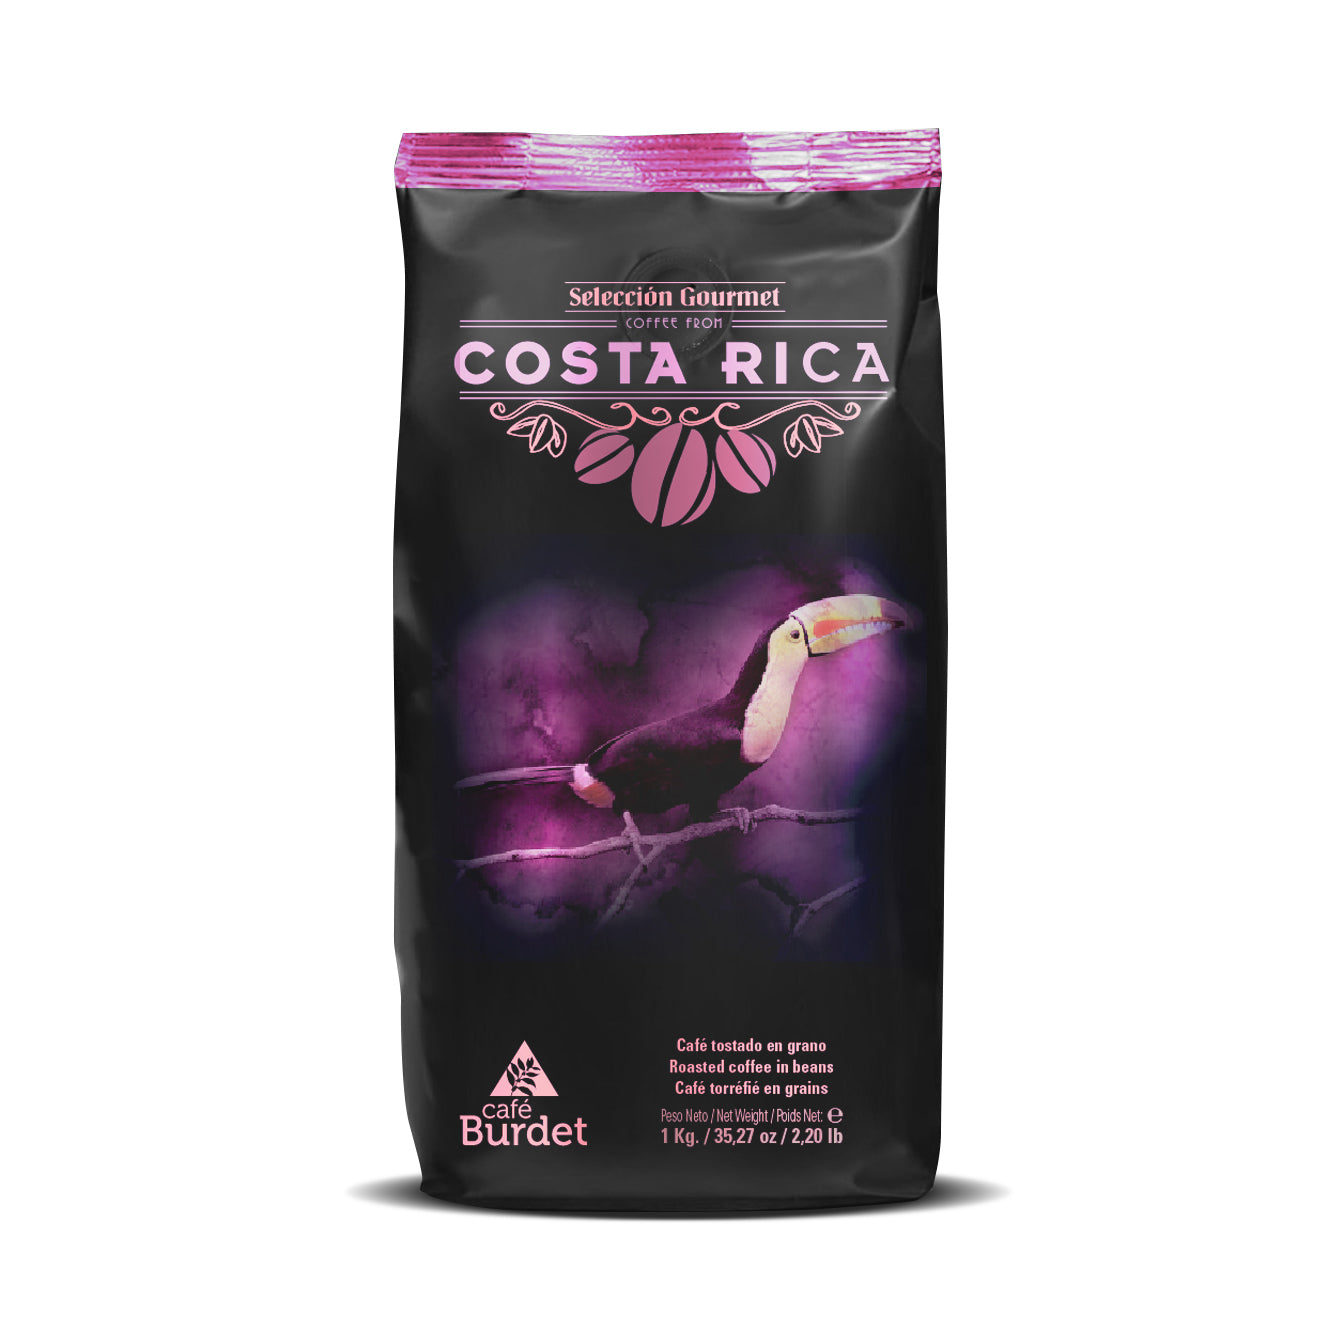 Gurmánský výběr COSTA RICA 1kg - TheCoffeecz